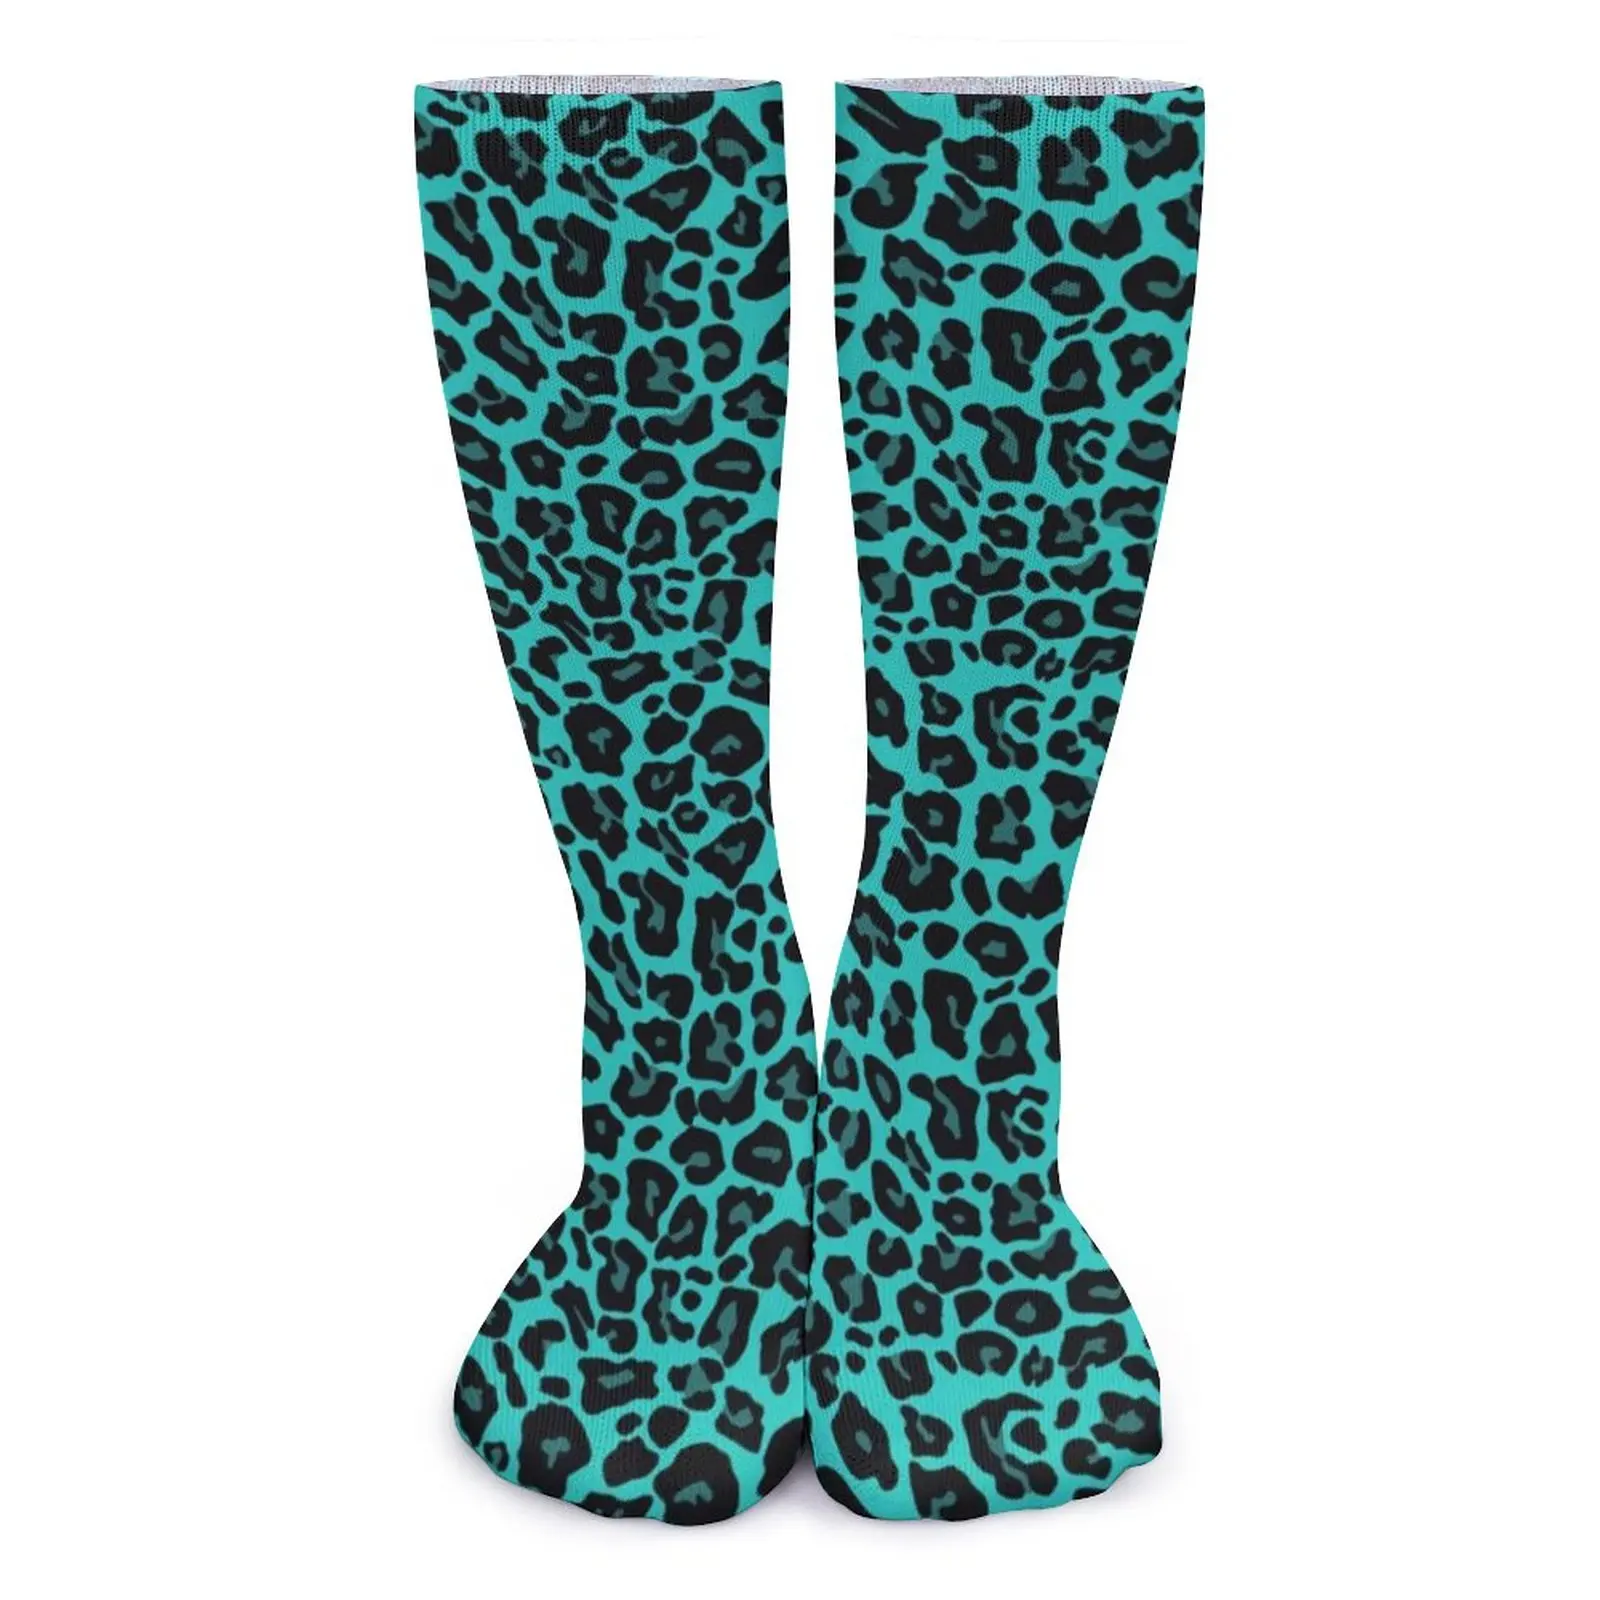 

Чулки с зеленым гепардом и принтом пятен, женские носки с леопардовым принтом для рождественского подарка, удобные забавные носки, нескользящие носки с графическим рисунком для бега